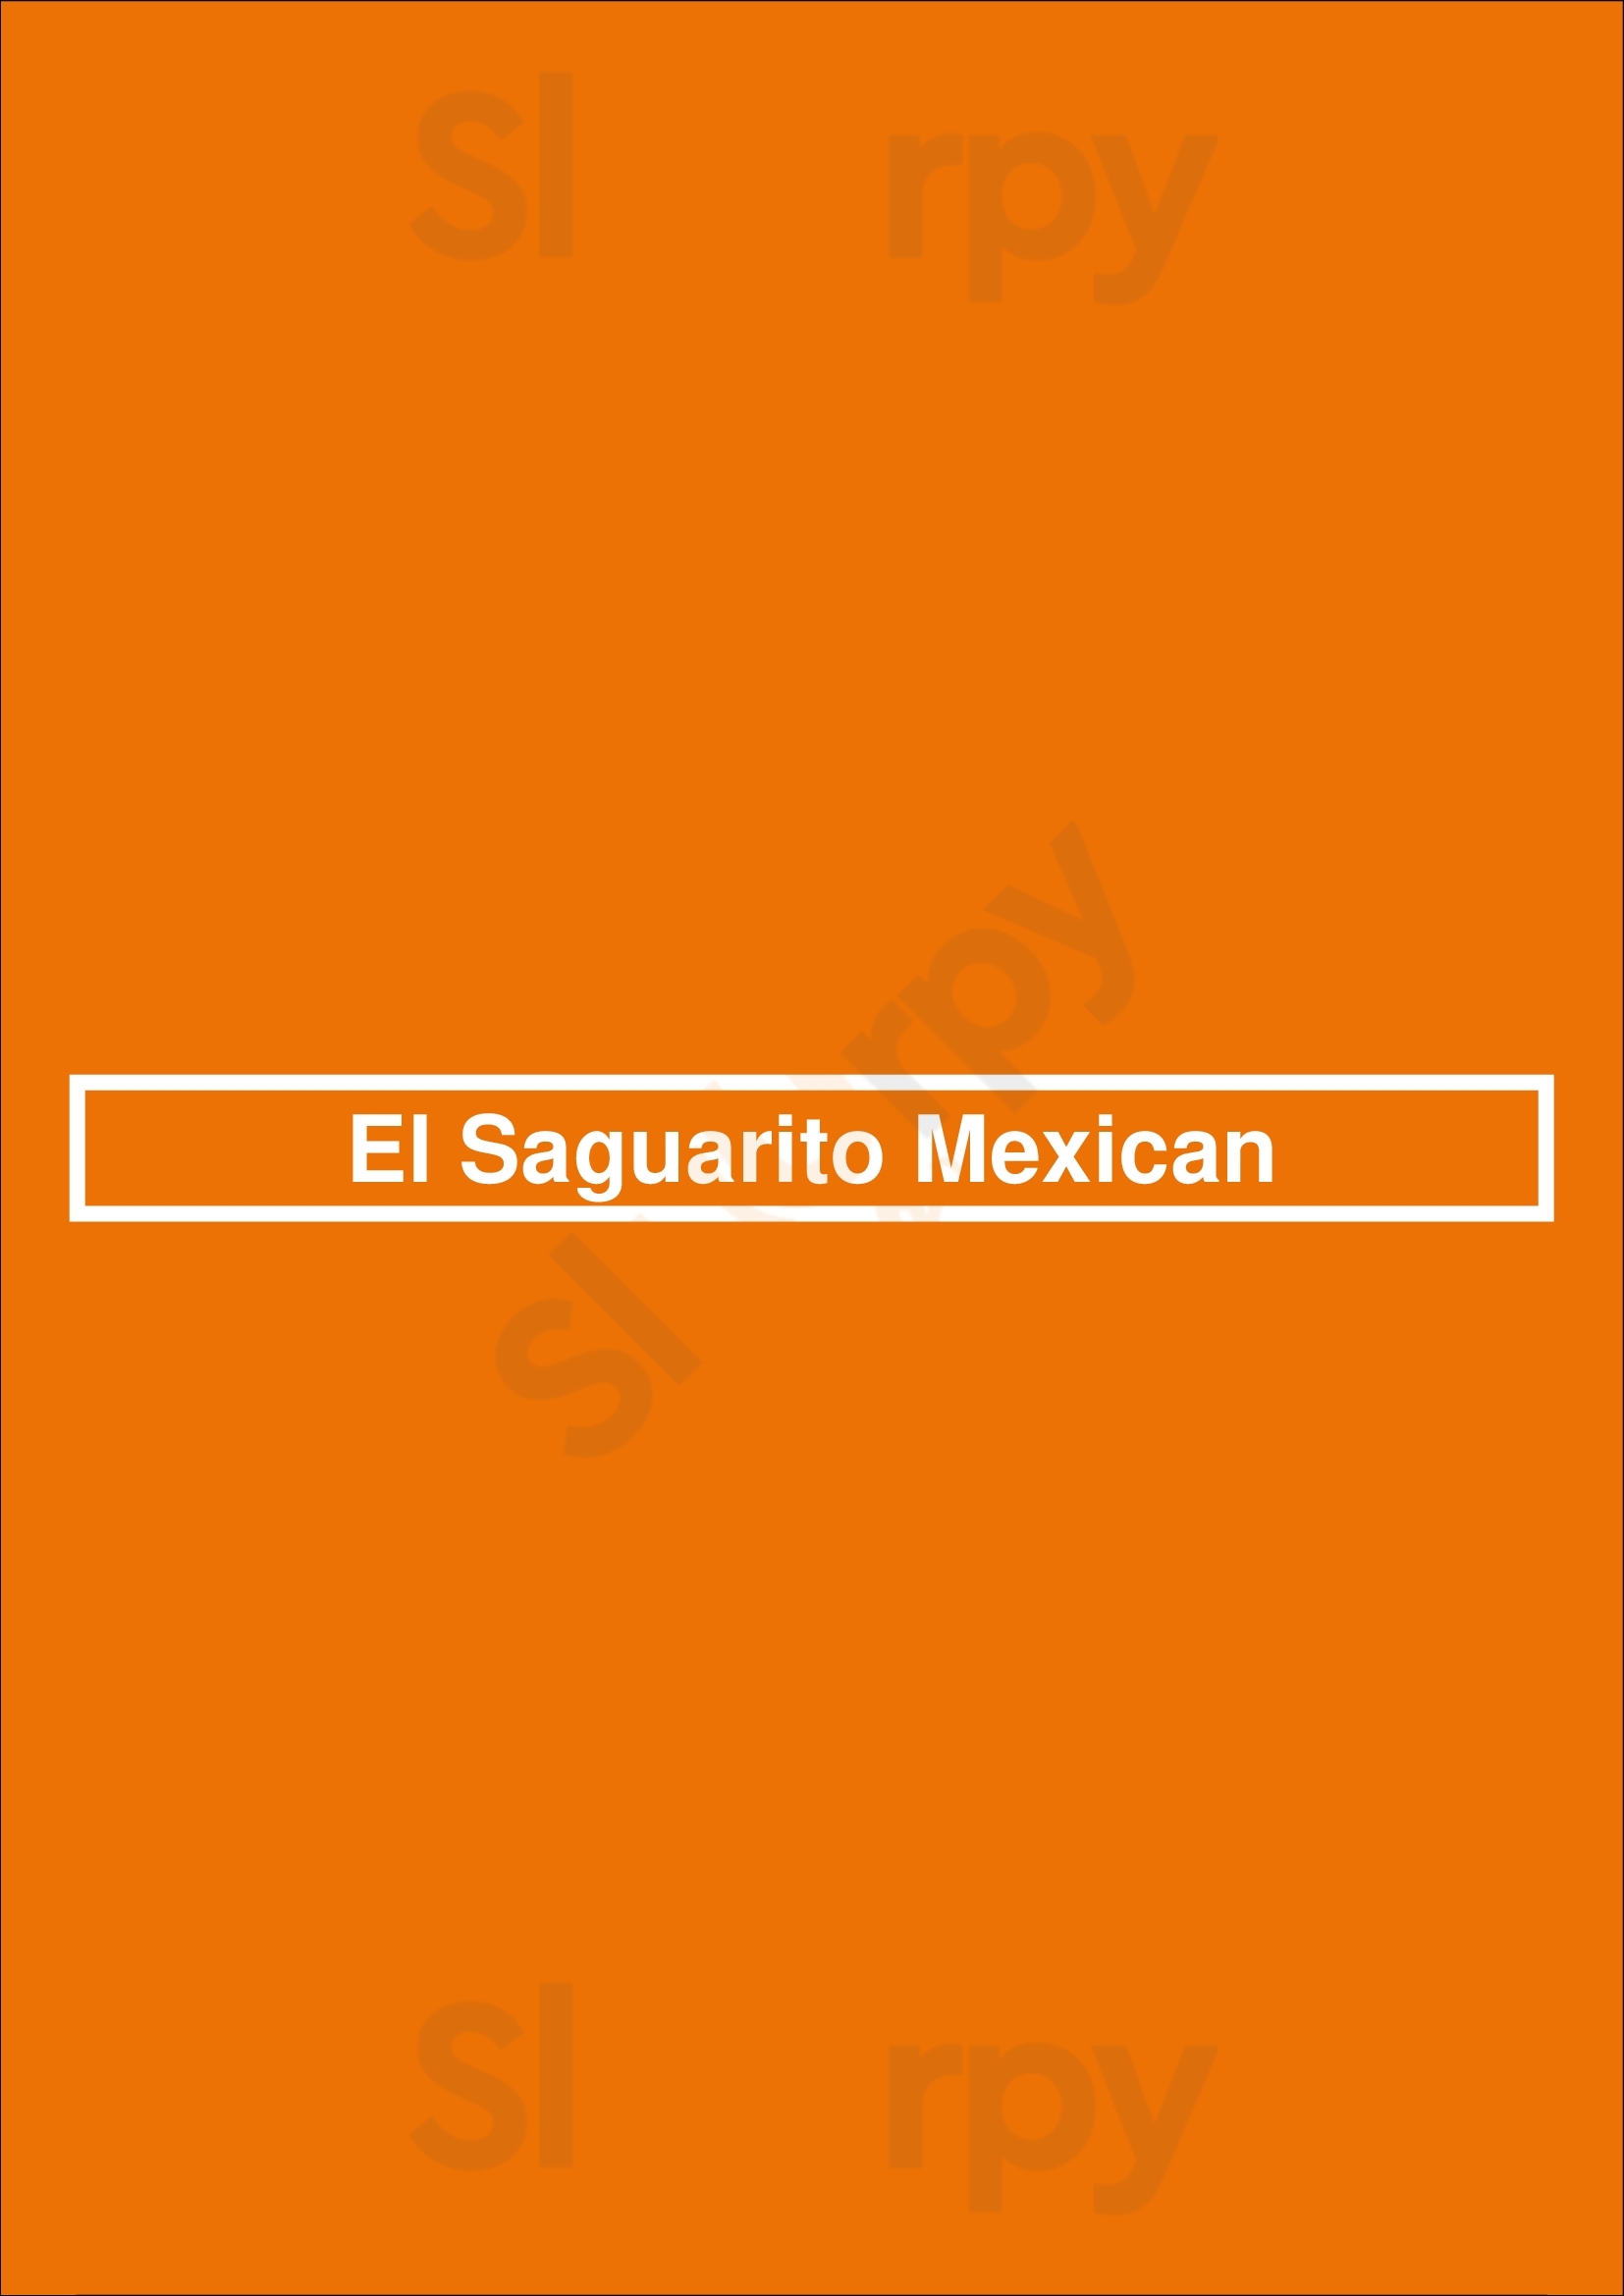 El Saguarito Mexican Tucson Menu - 1